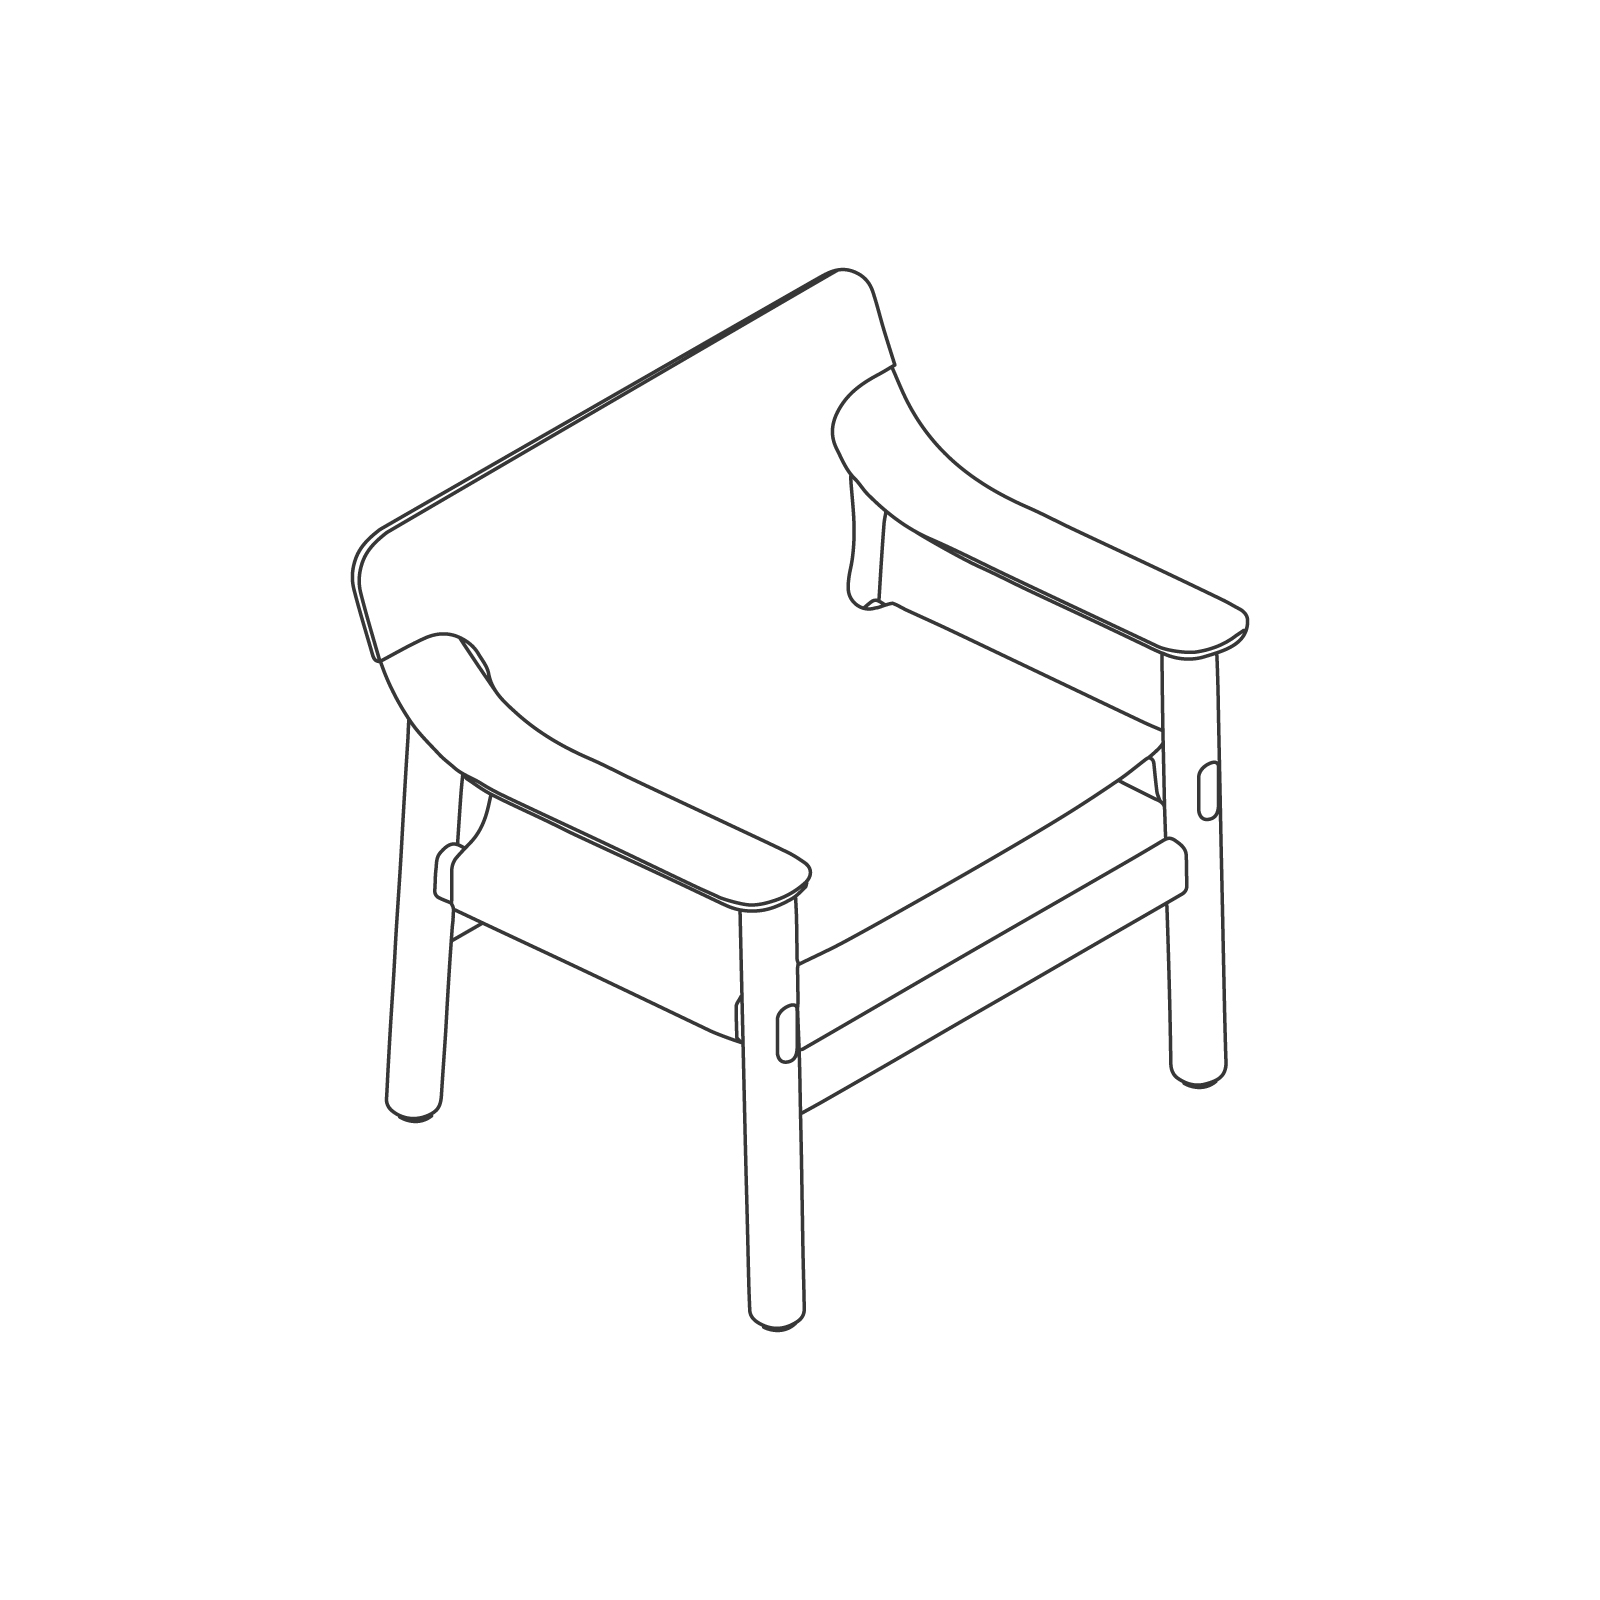 A line drawing - Bernard Lounge Chair